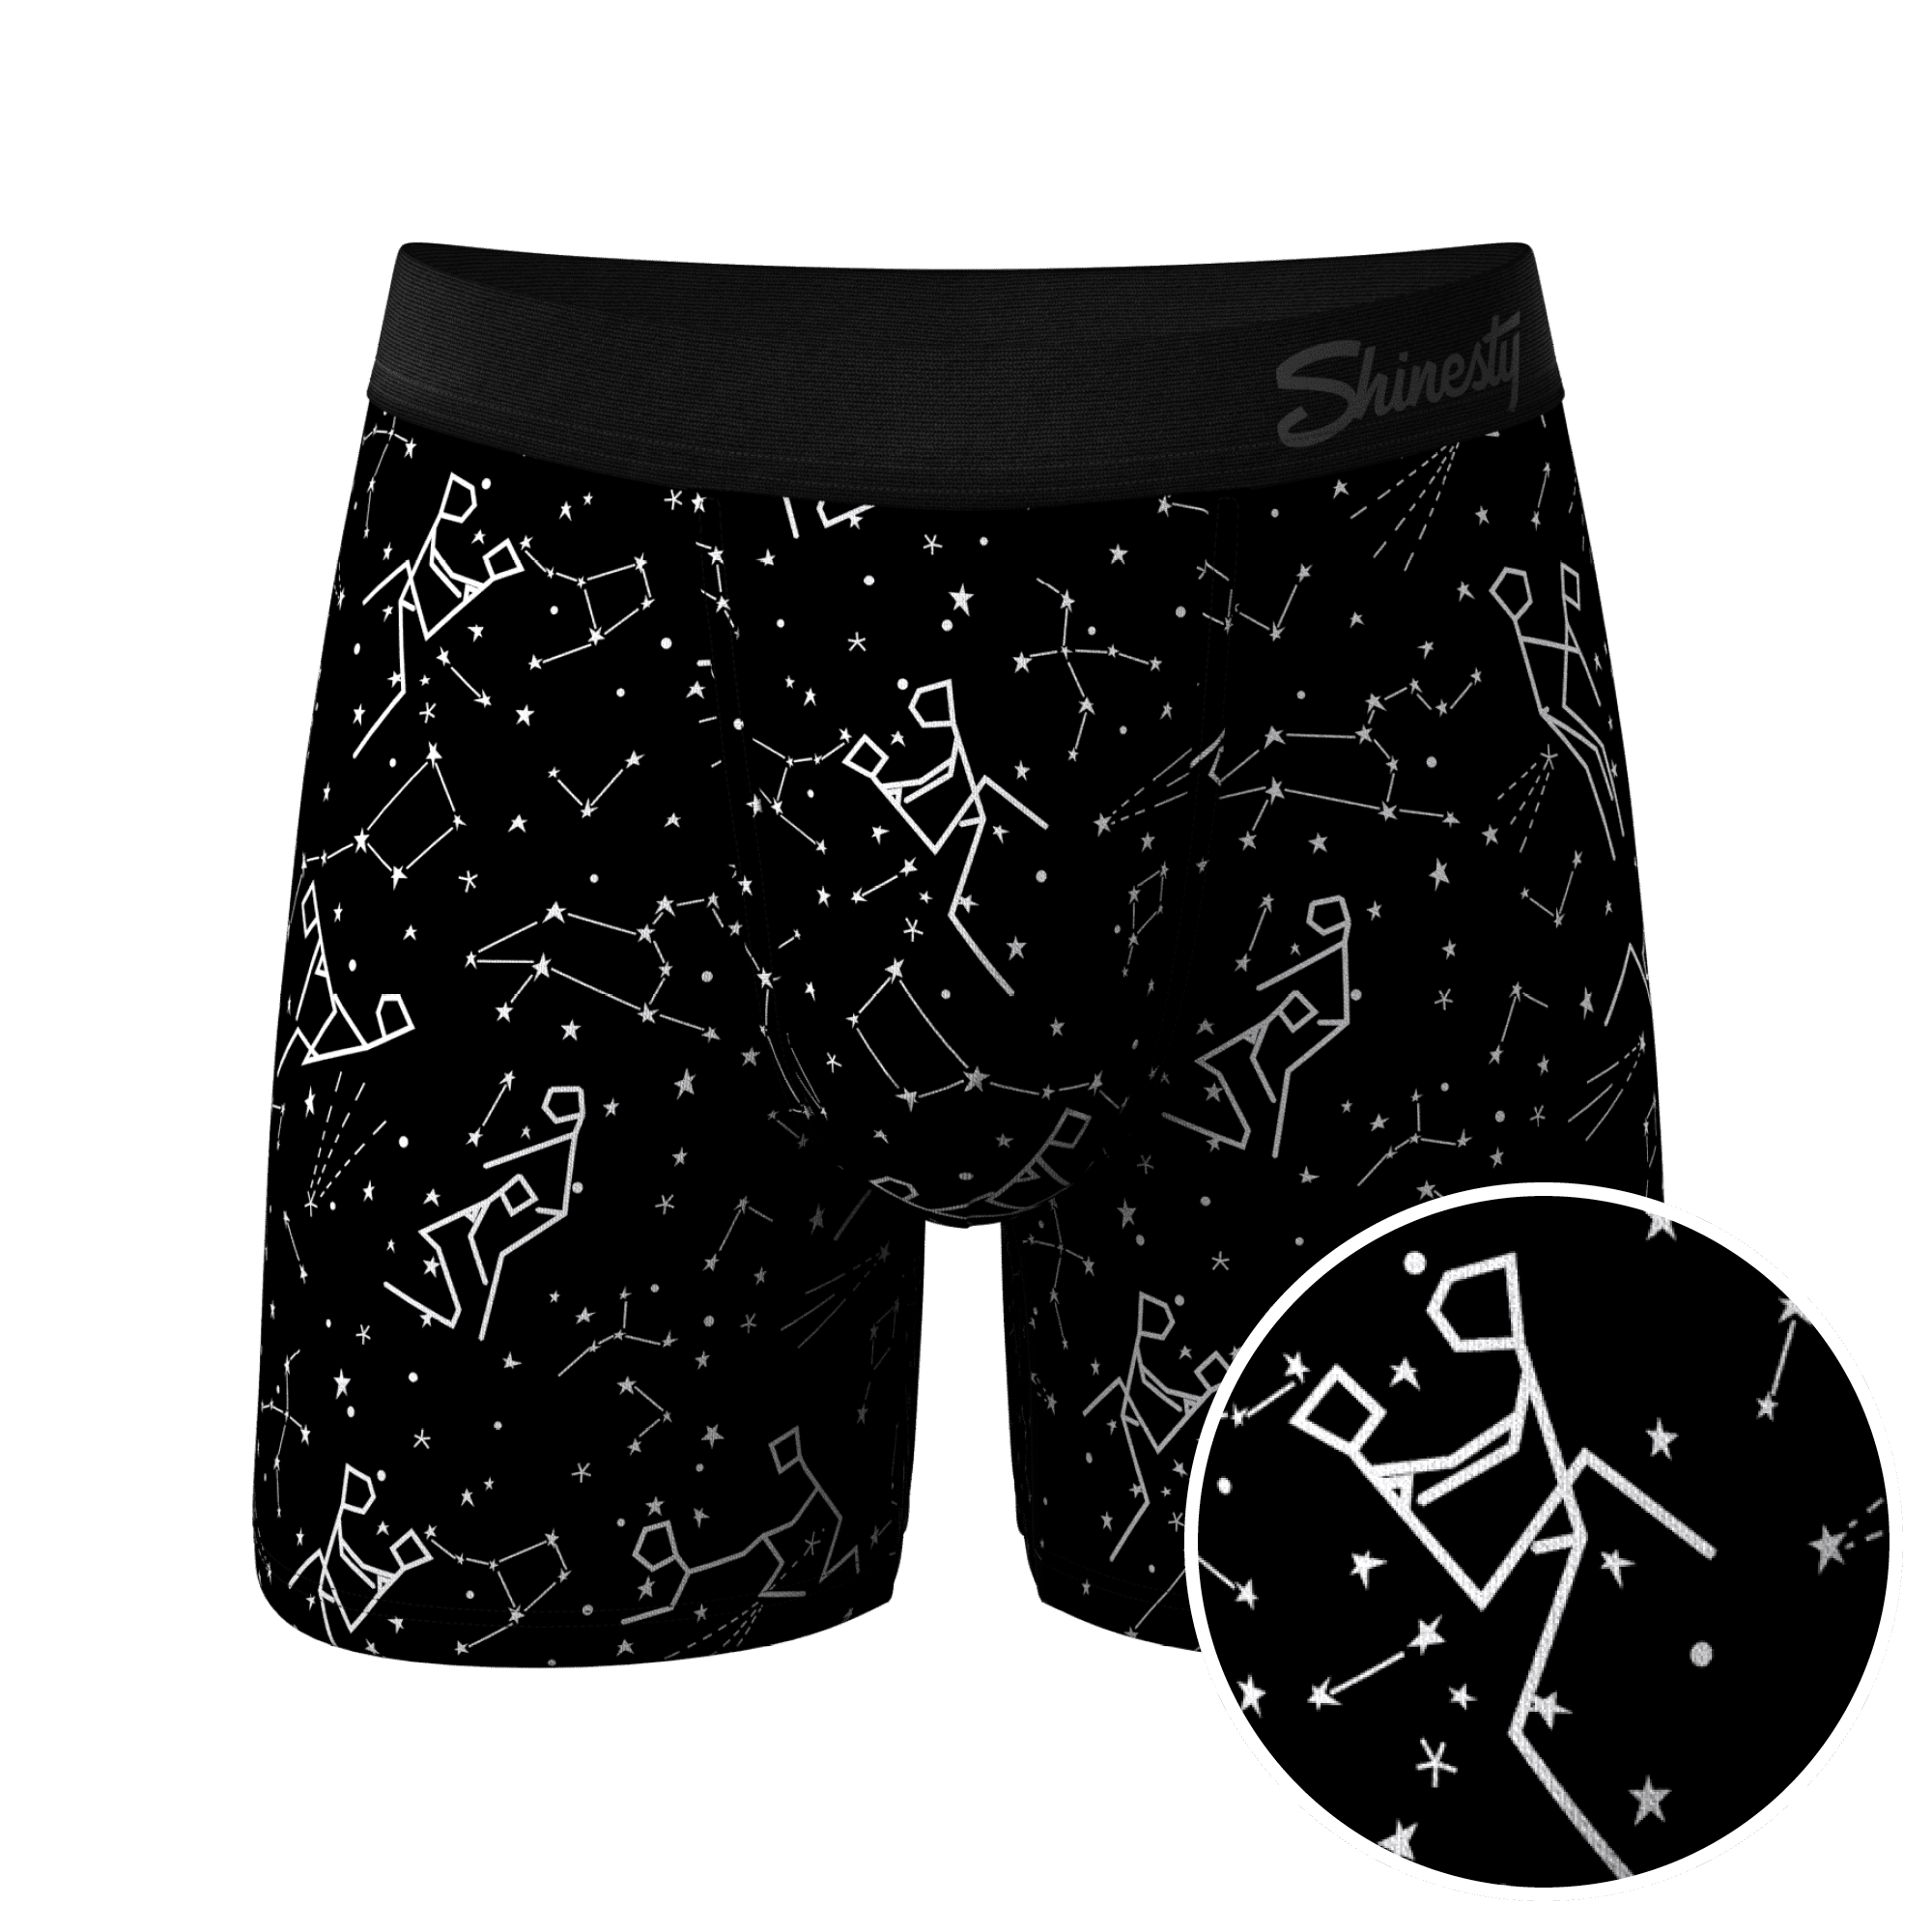 The Threat Level Midnight // Black Ball Hammock® Pouch Underwear